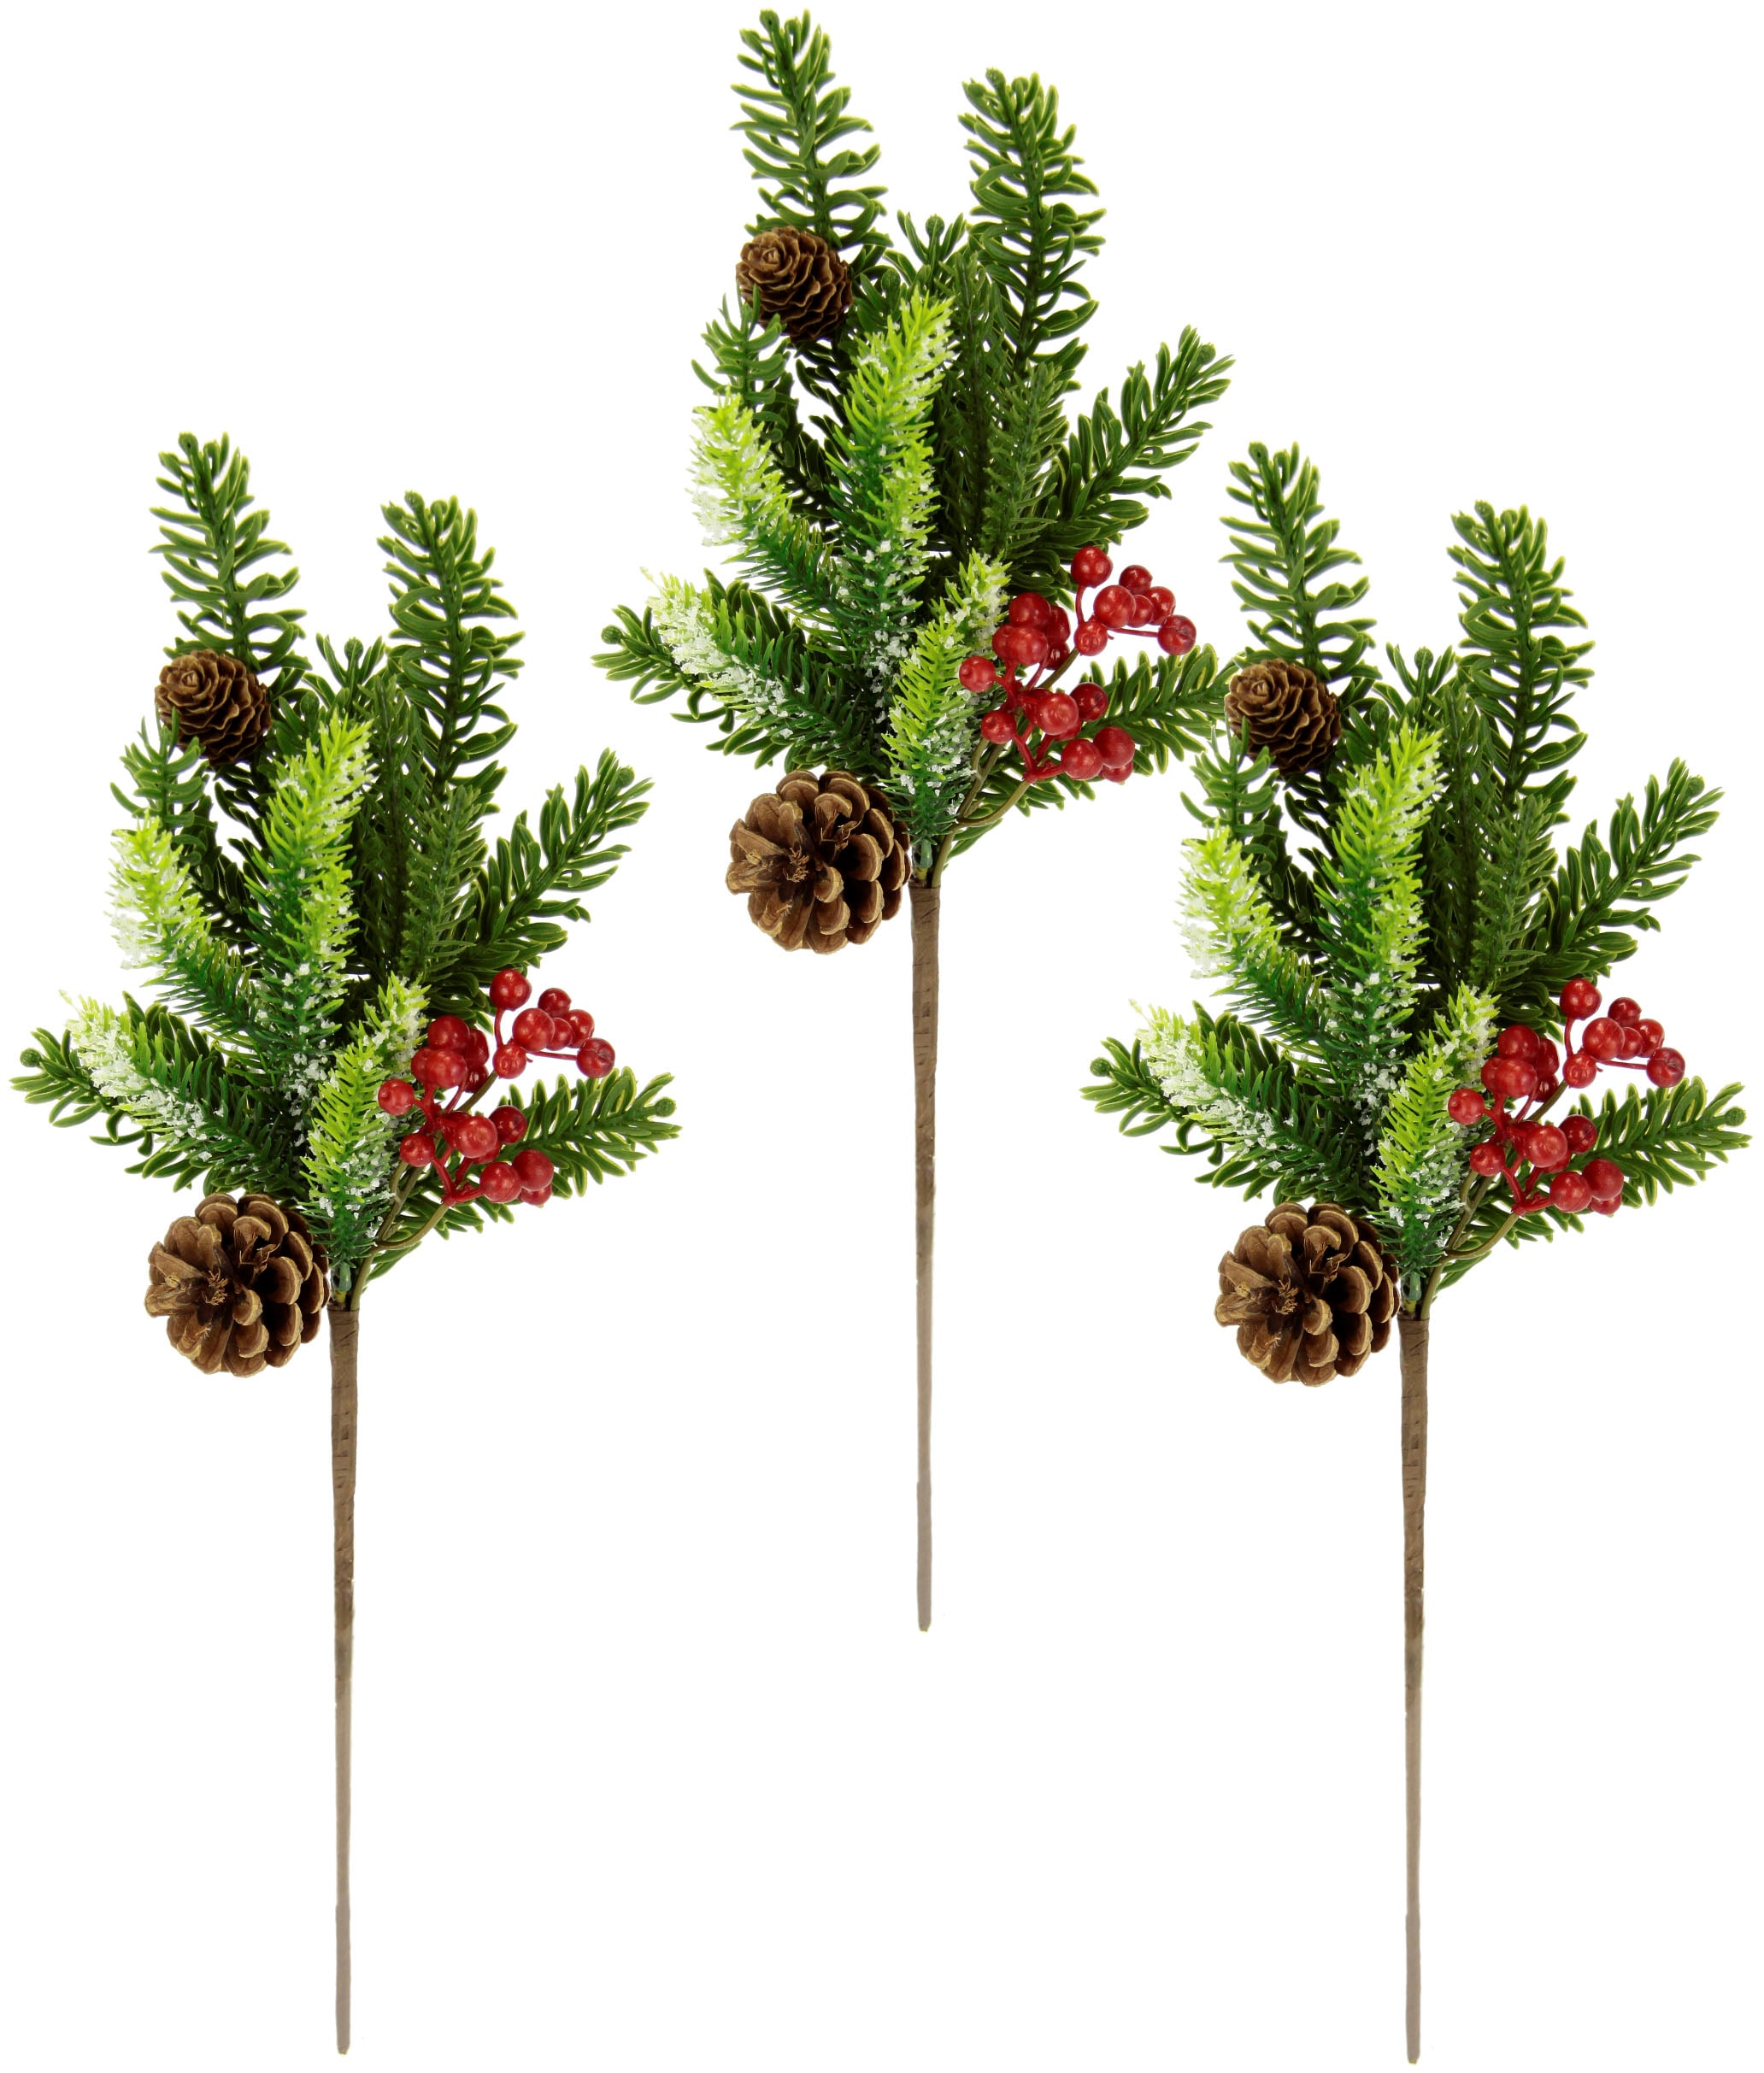 I.GE.A. Winterliche Kunstpflanze »Kunstzweig, Weihnachtsdeko«, mit echten  Zapfen und Beeren, 3er Set, grün, rot, natur kaufen